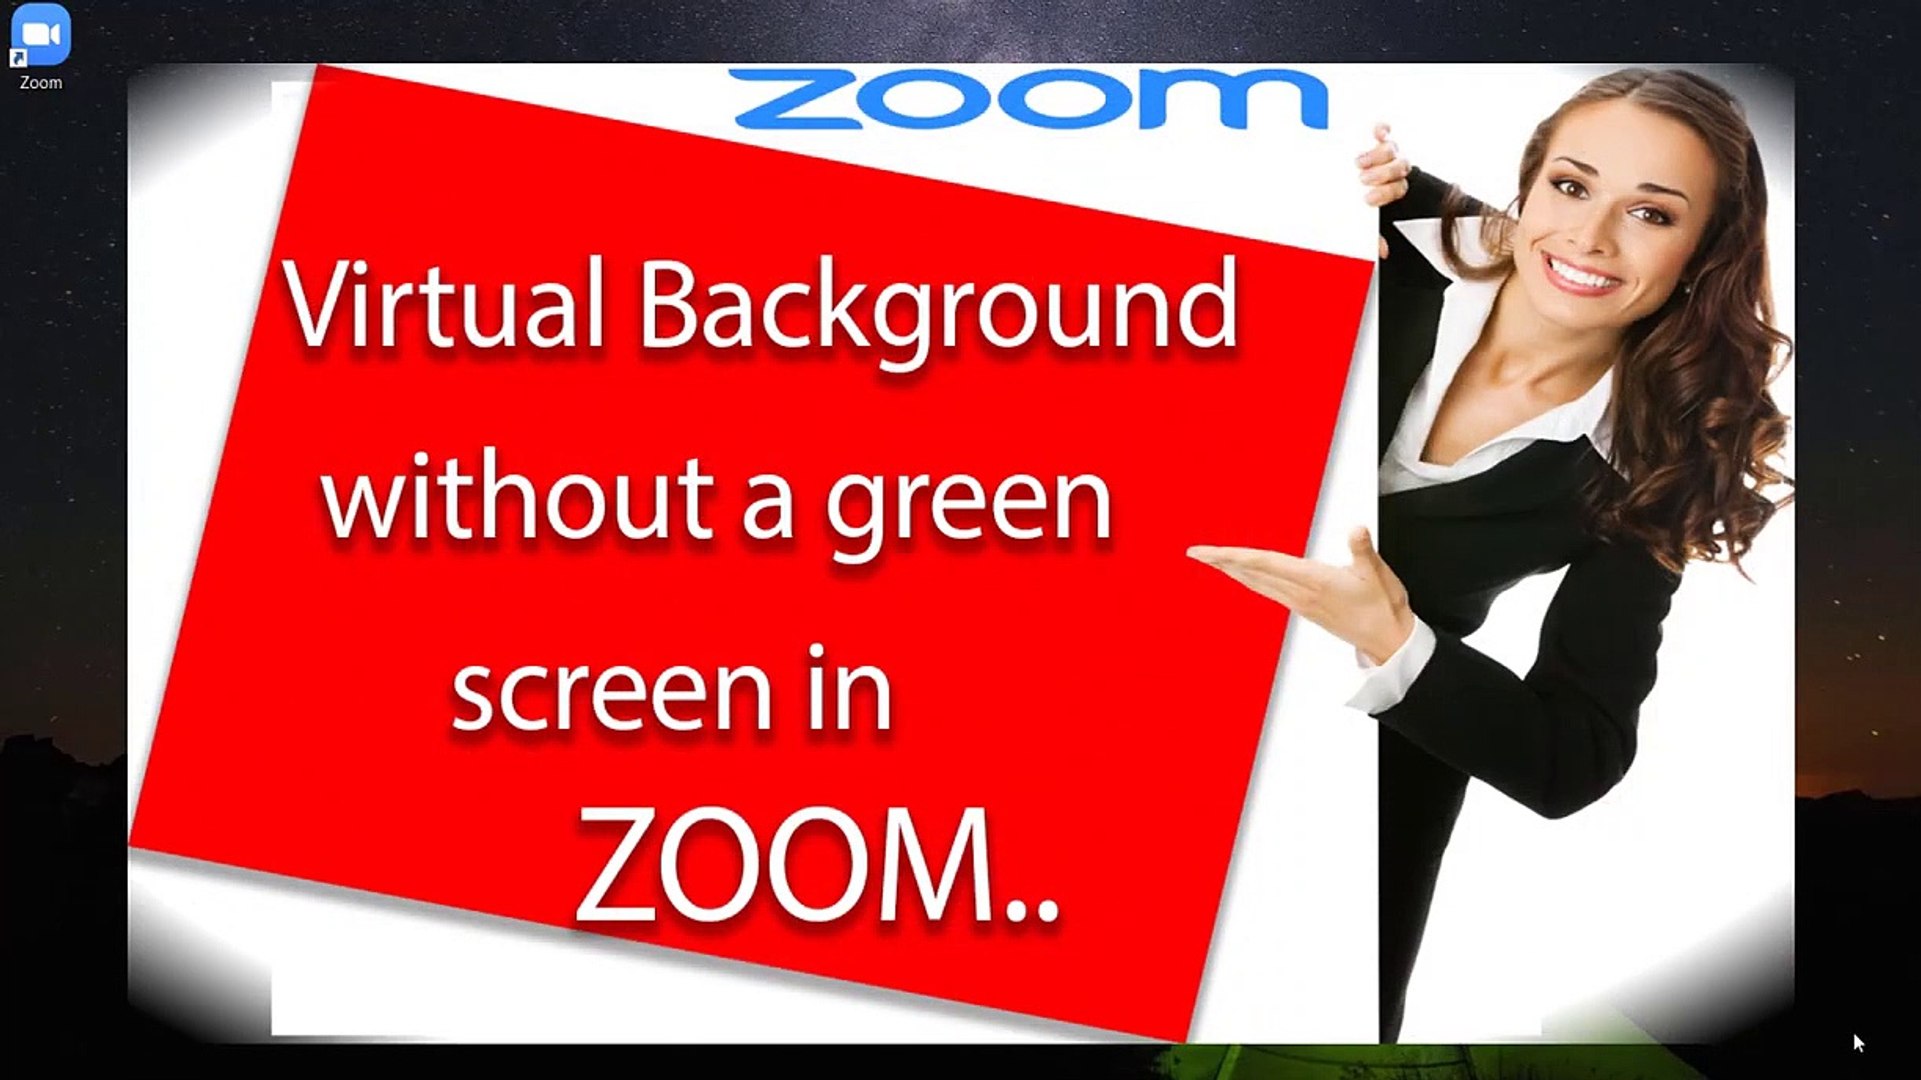 Thiết lập Virtual Backgrounds trên Zoom không hề khó khăn với trình đơn đơn giản và các mẫu nền độc đáo. Hãy khám phá và tùy chỉnh chúng để tạo ra những buổi họp trực tuyến đẹp và chuyên nghiệp nhất.